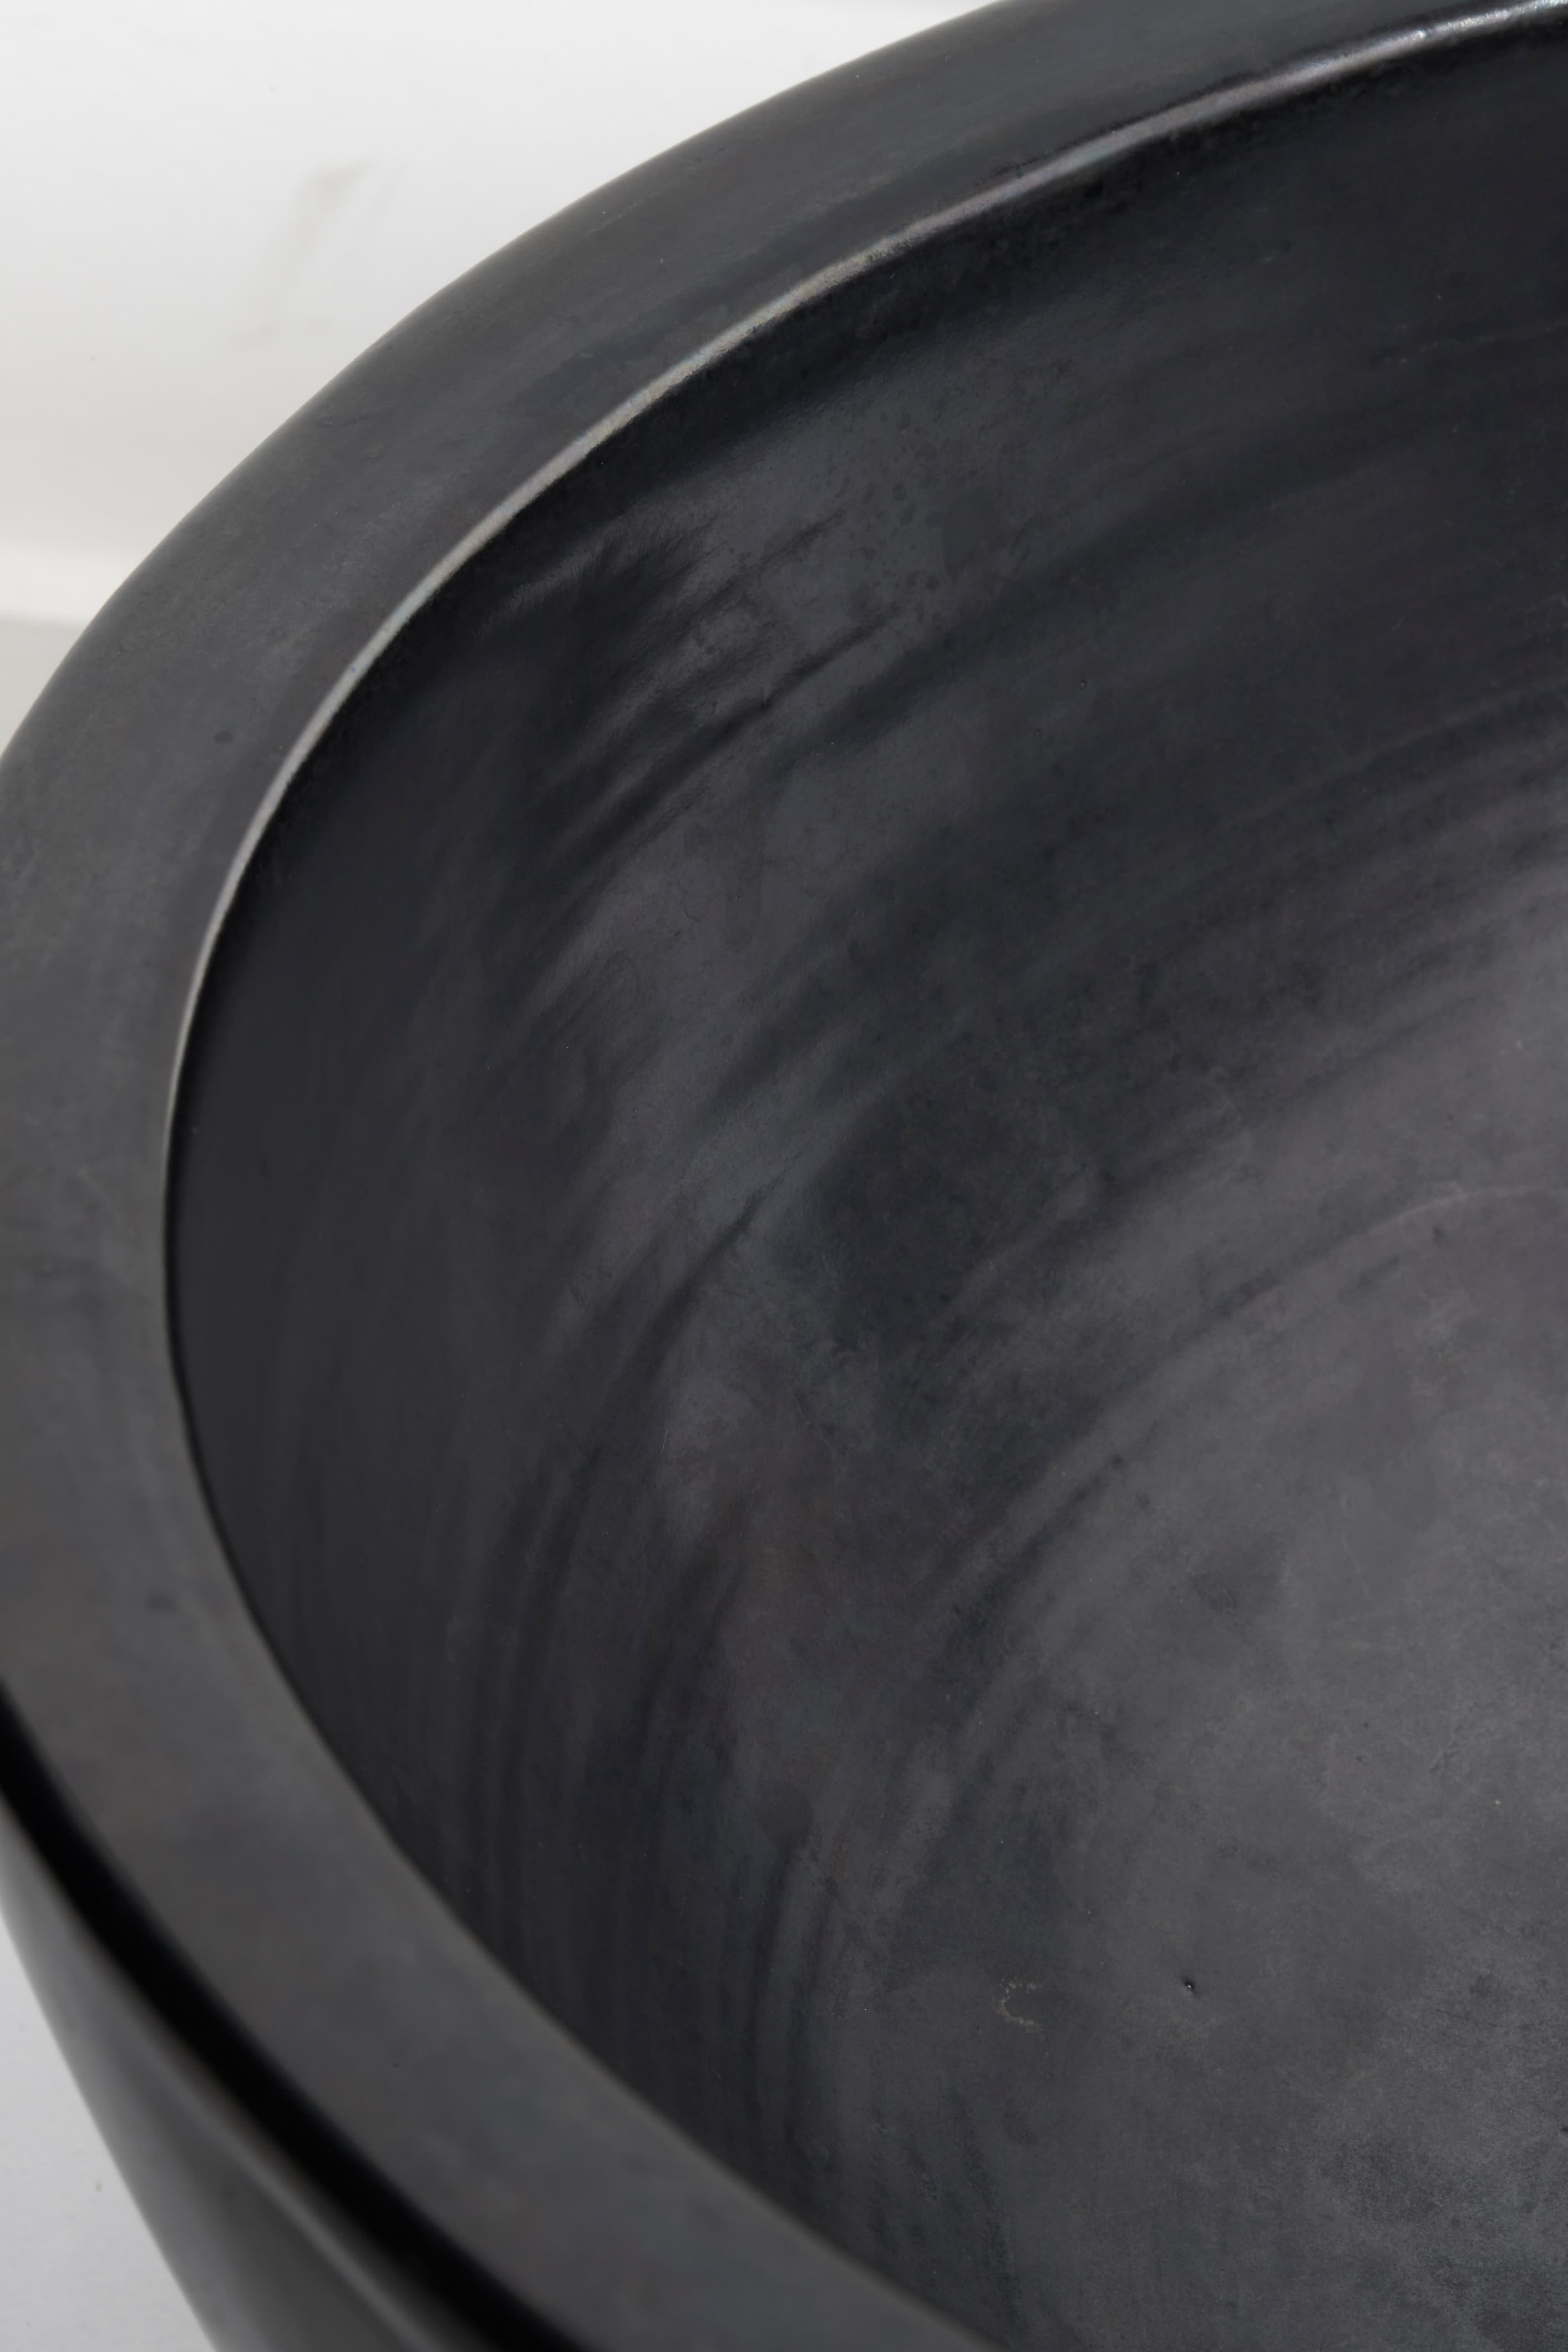 Georges Jouve, black enameled bowl, vue 01